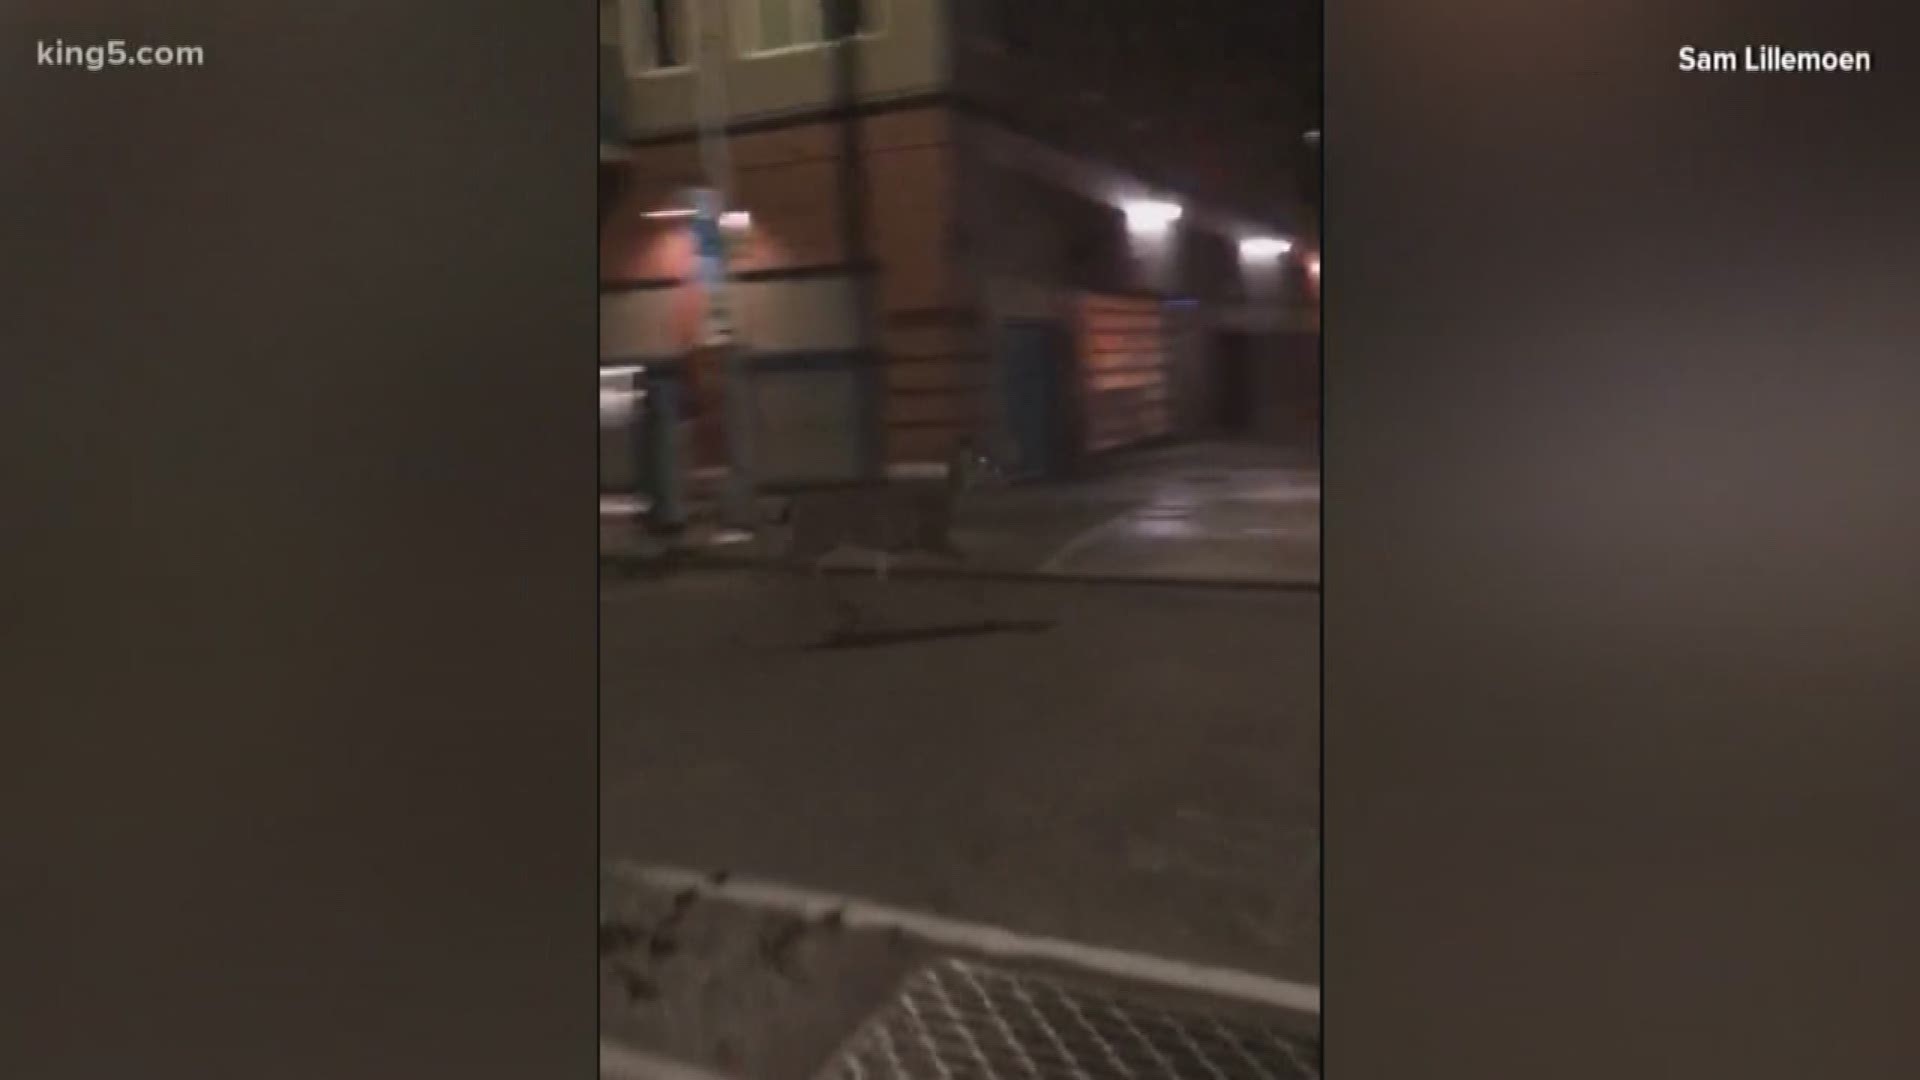 Sam Lillemoen took video of a deer running through Seattle's Belltown neighborhood.